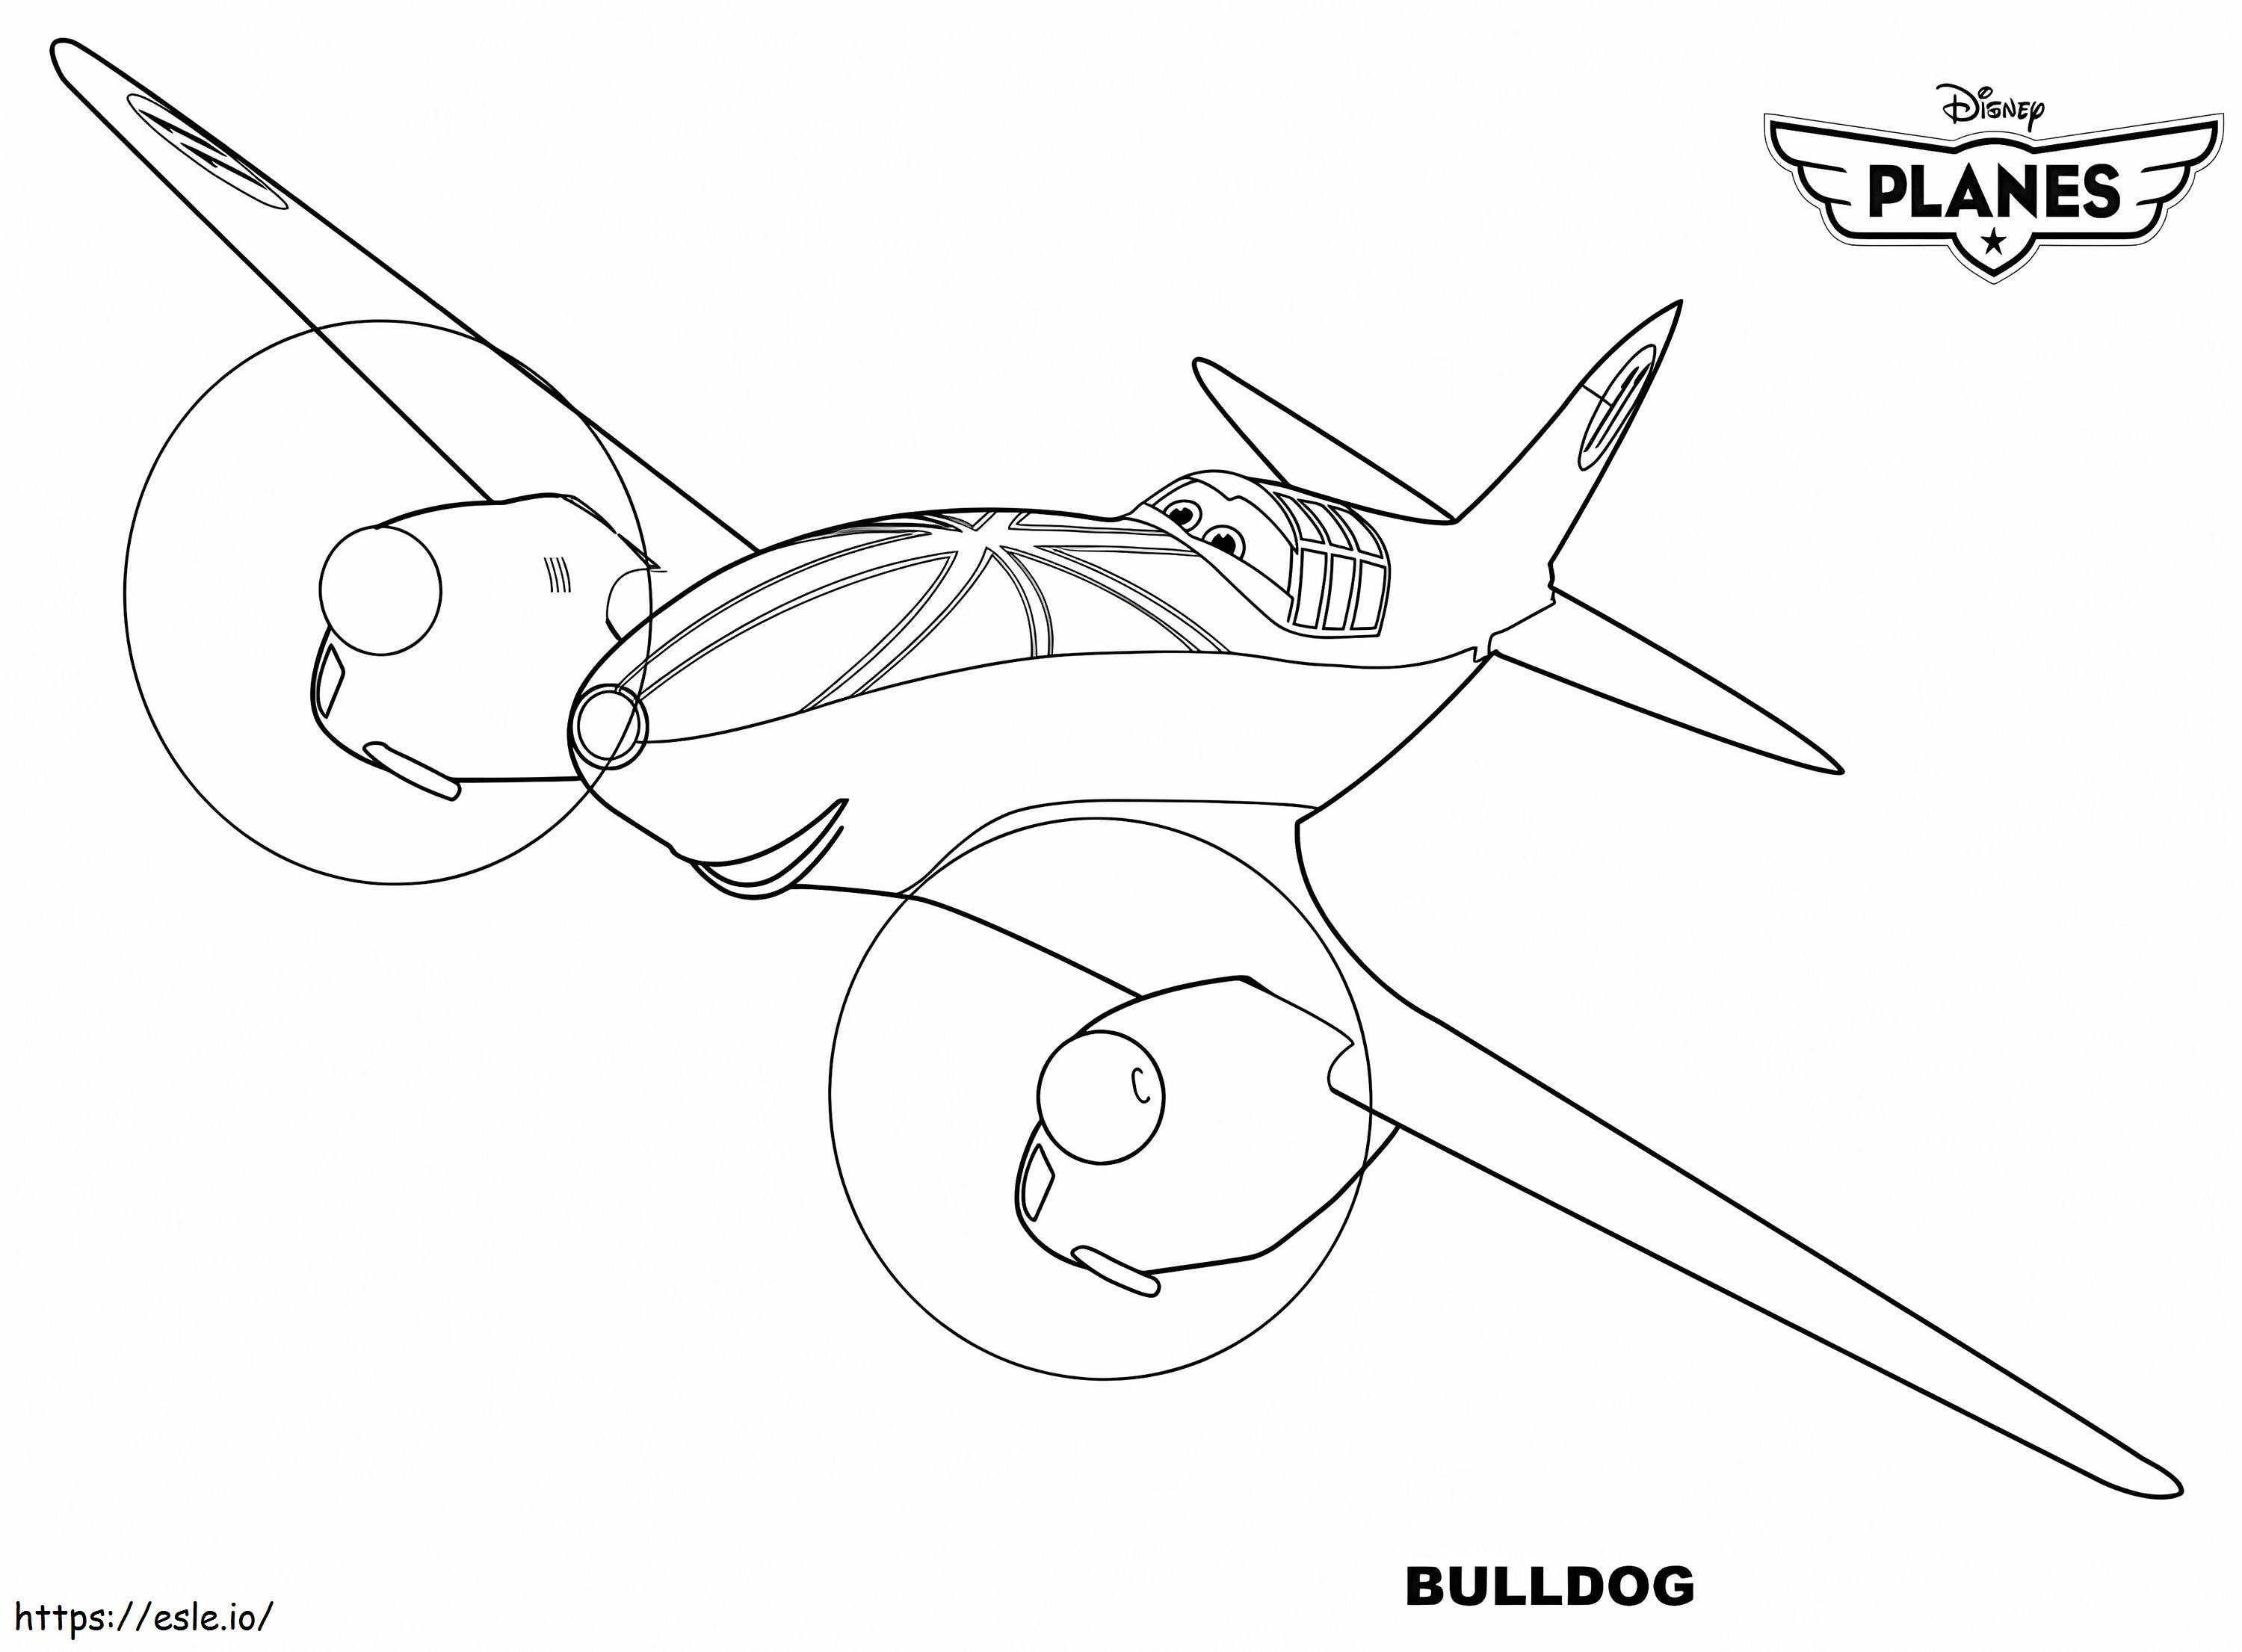 Bulldog dos aviões da Disney para colorir